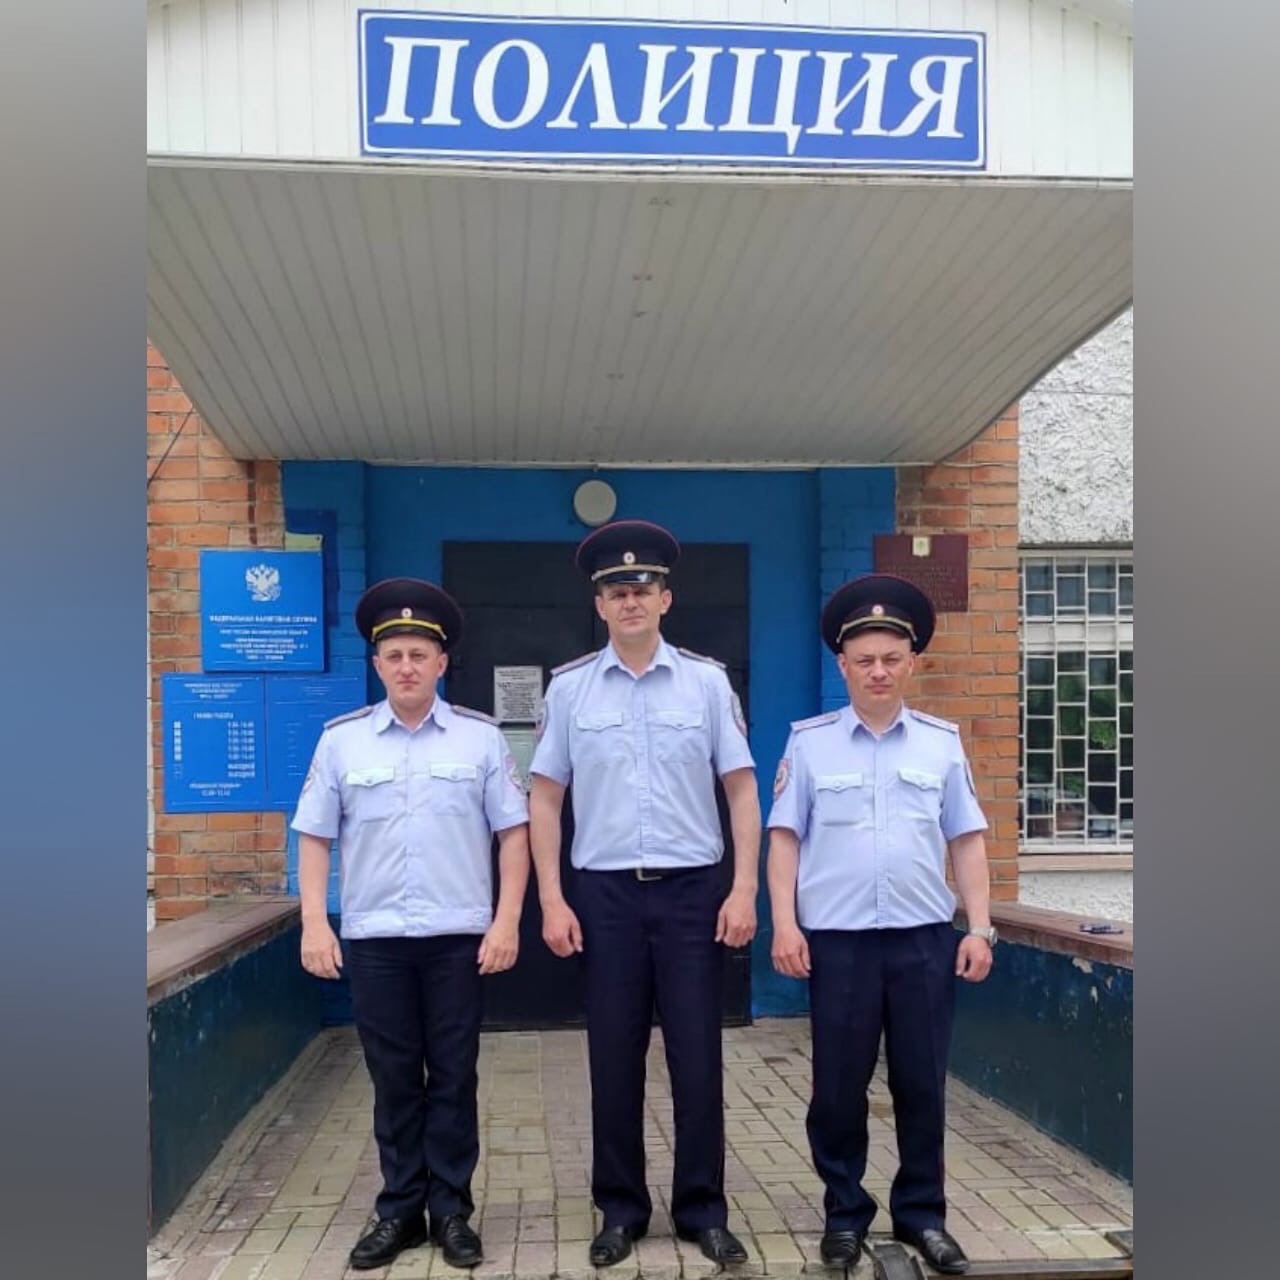 Москвичка поблагодарила смоленских полицейских за профессионализм и чуткость к людям